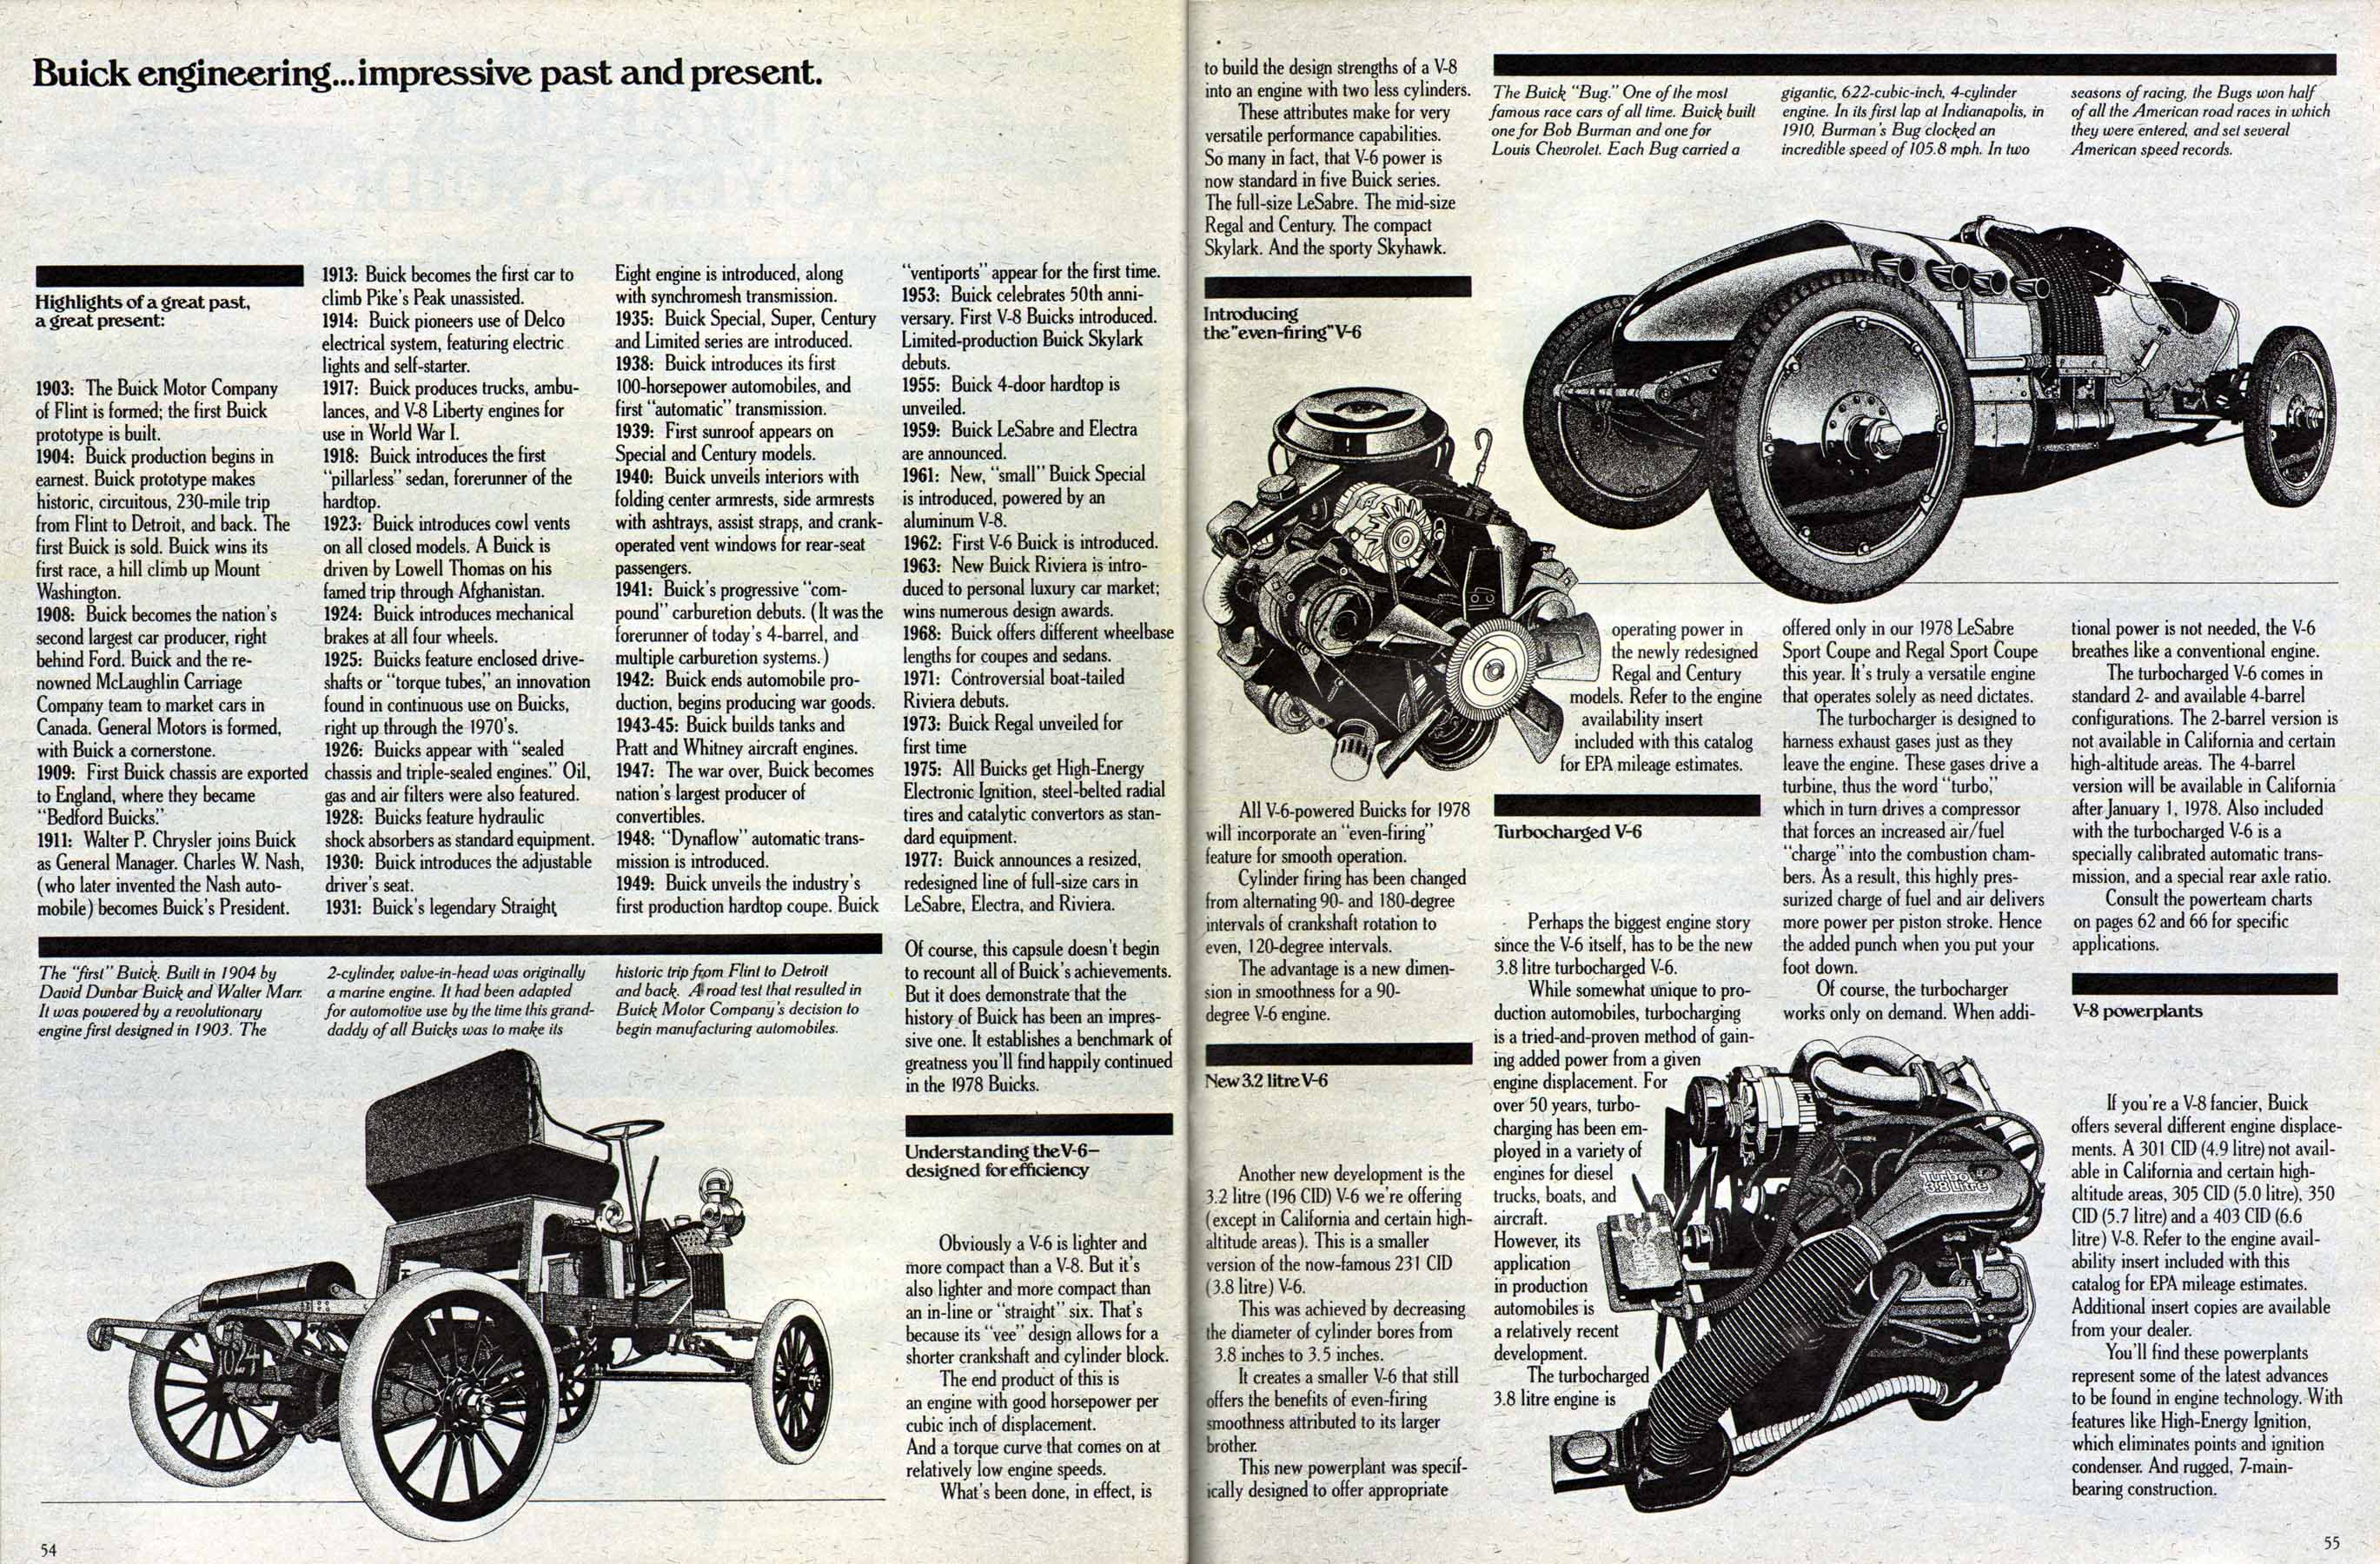 1978 Buick Full Line Prestige-54-55